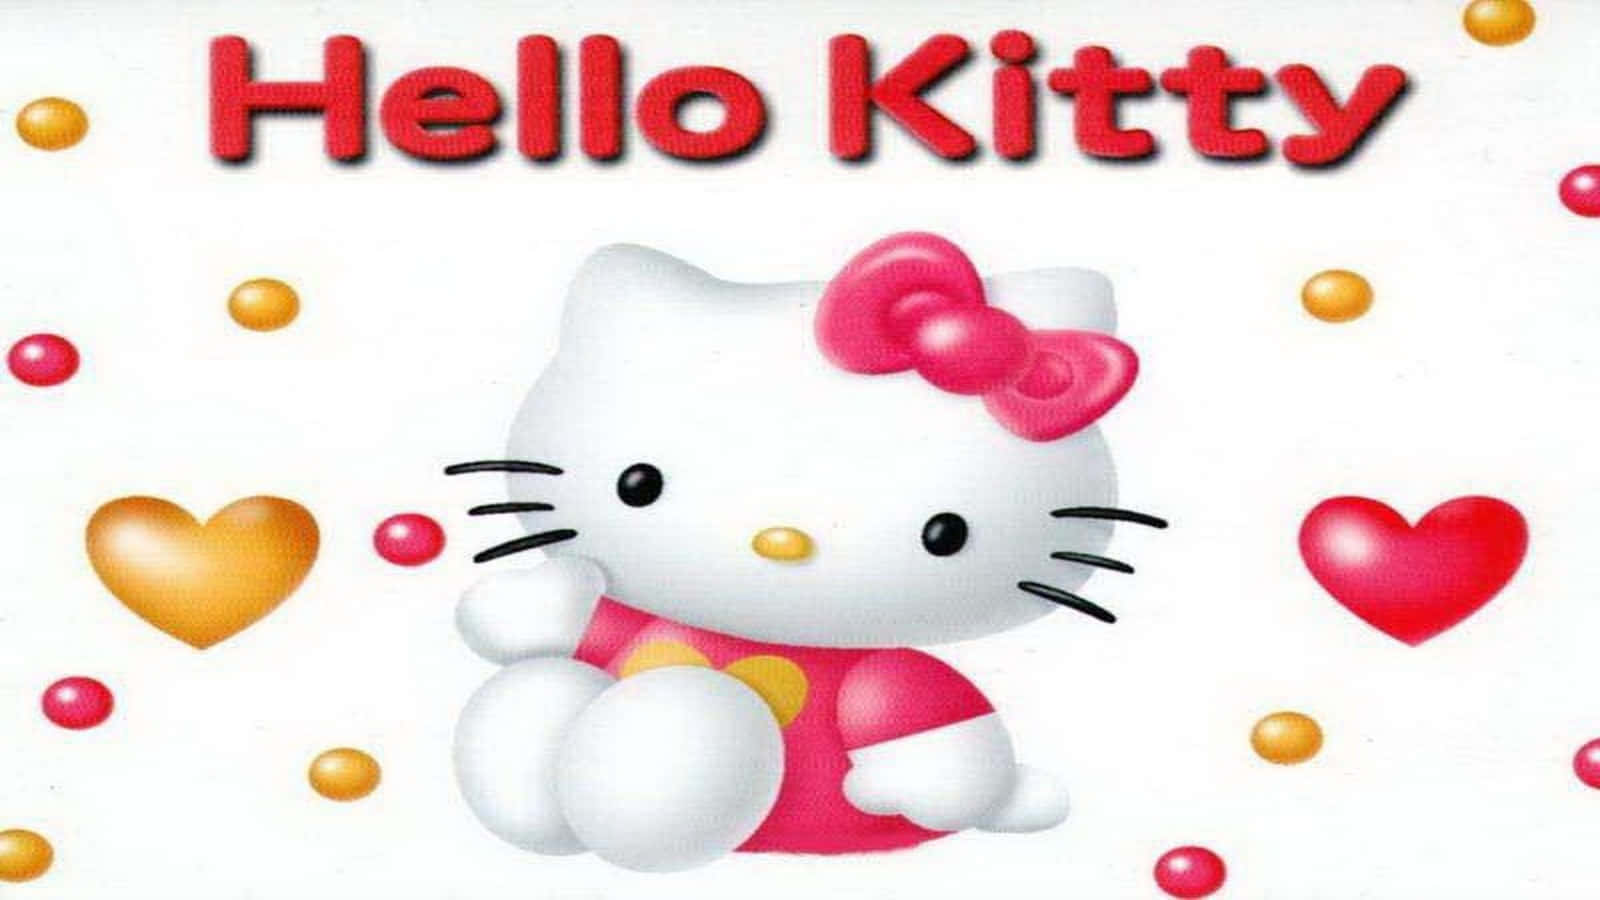 Hello Kitty Classic Design Wallpaper